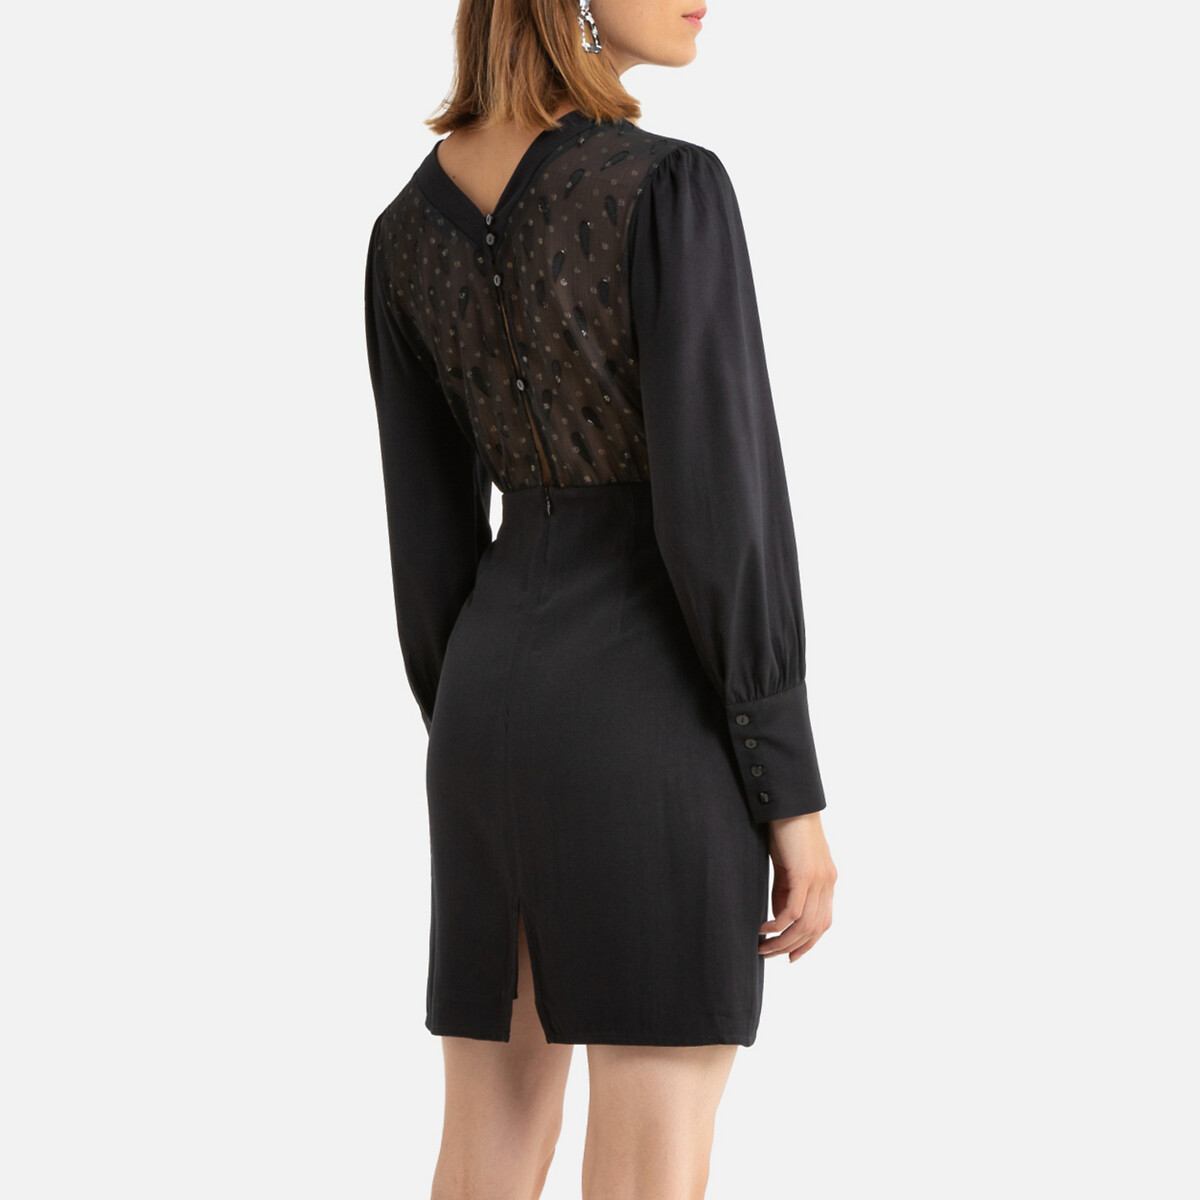 Платье La Redoute Короткое длинные рукава декольте сзади 0(XS) черный, размер 0(XS) Короткое длинные рукава декольте сзади 0(XS) черный - фото 4